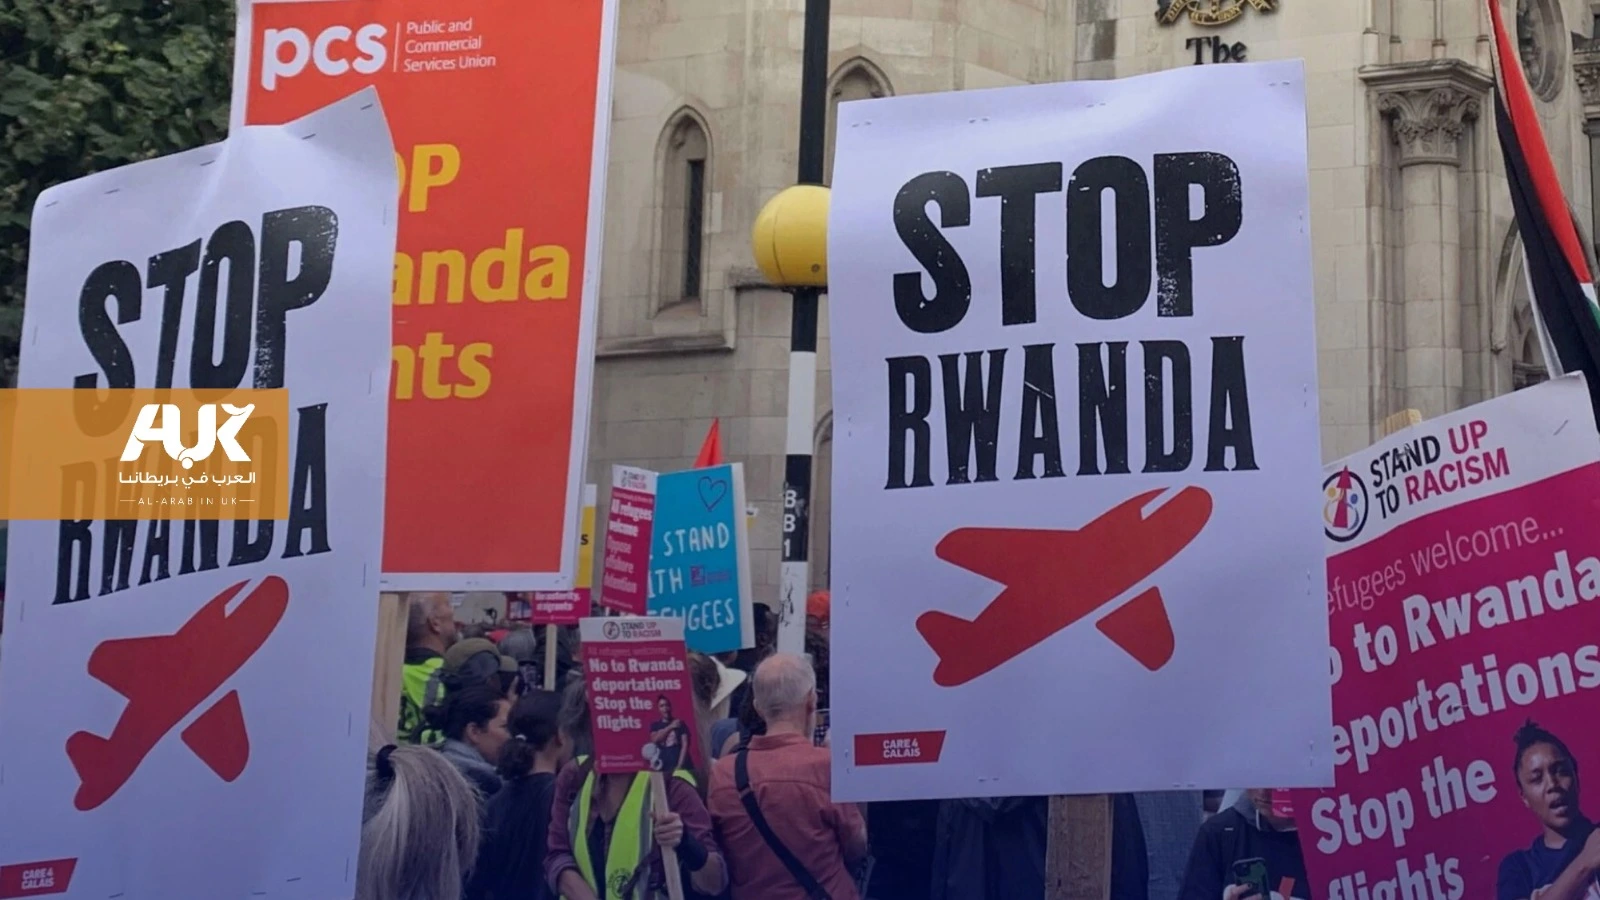 حزب العمال البريطاني يهاجم خطة ترحيل المهاجرين إلى رواندا 